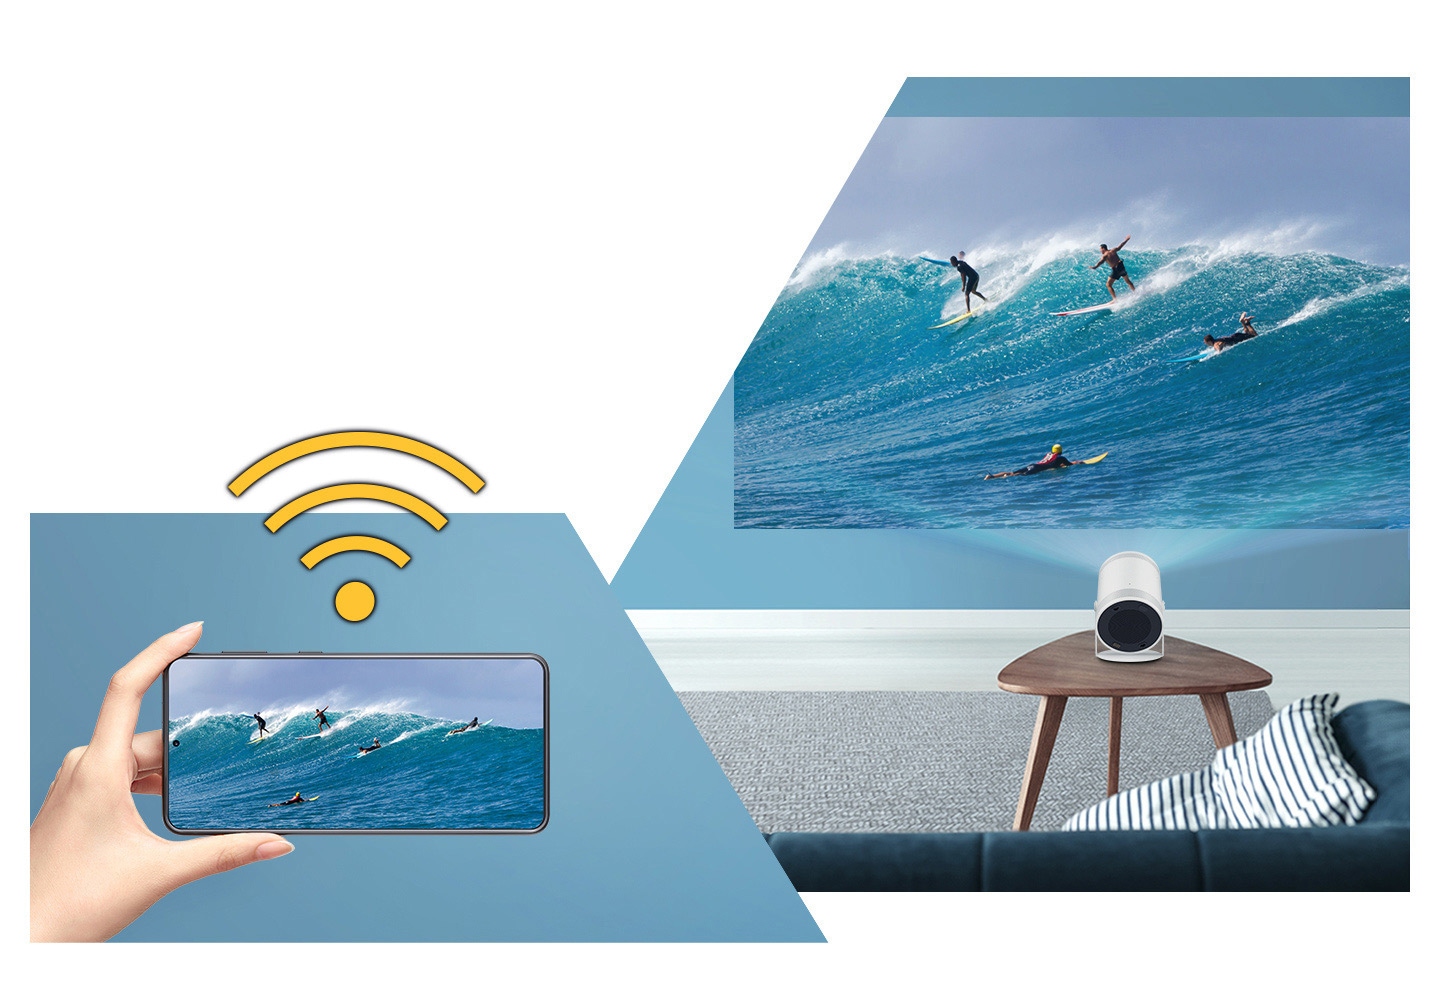 Sigle Wi-Fi sur une main tenant un appareil mobile. Une image de surf sur l'appareil mobile est reflétée sur le grand écran de The Freestyle.